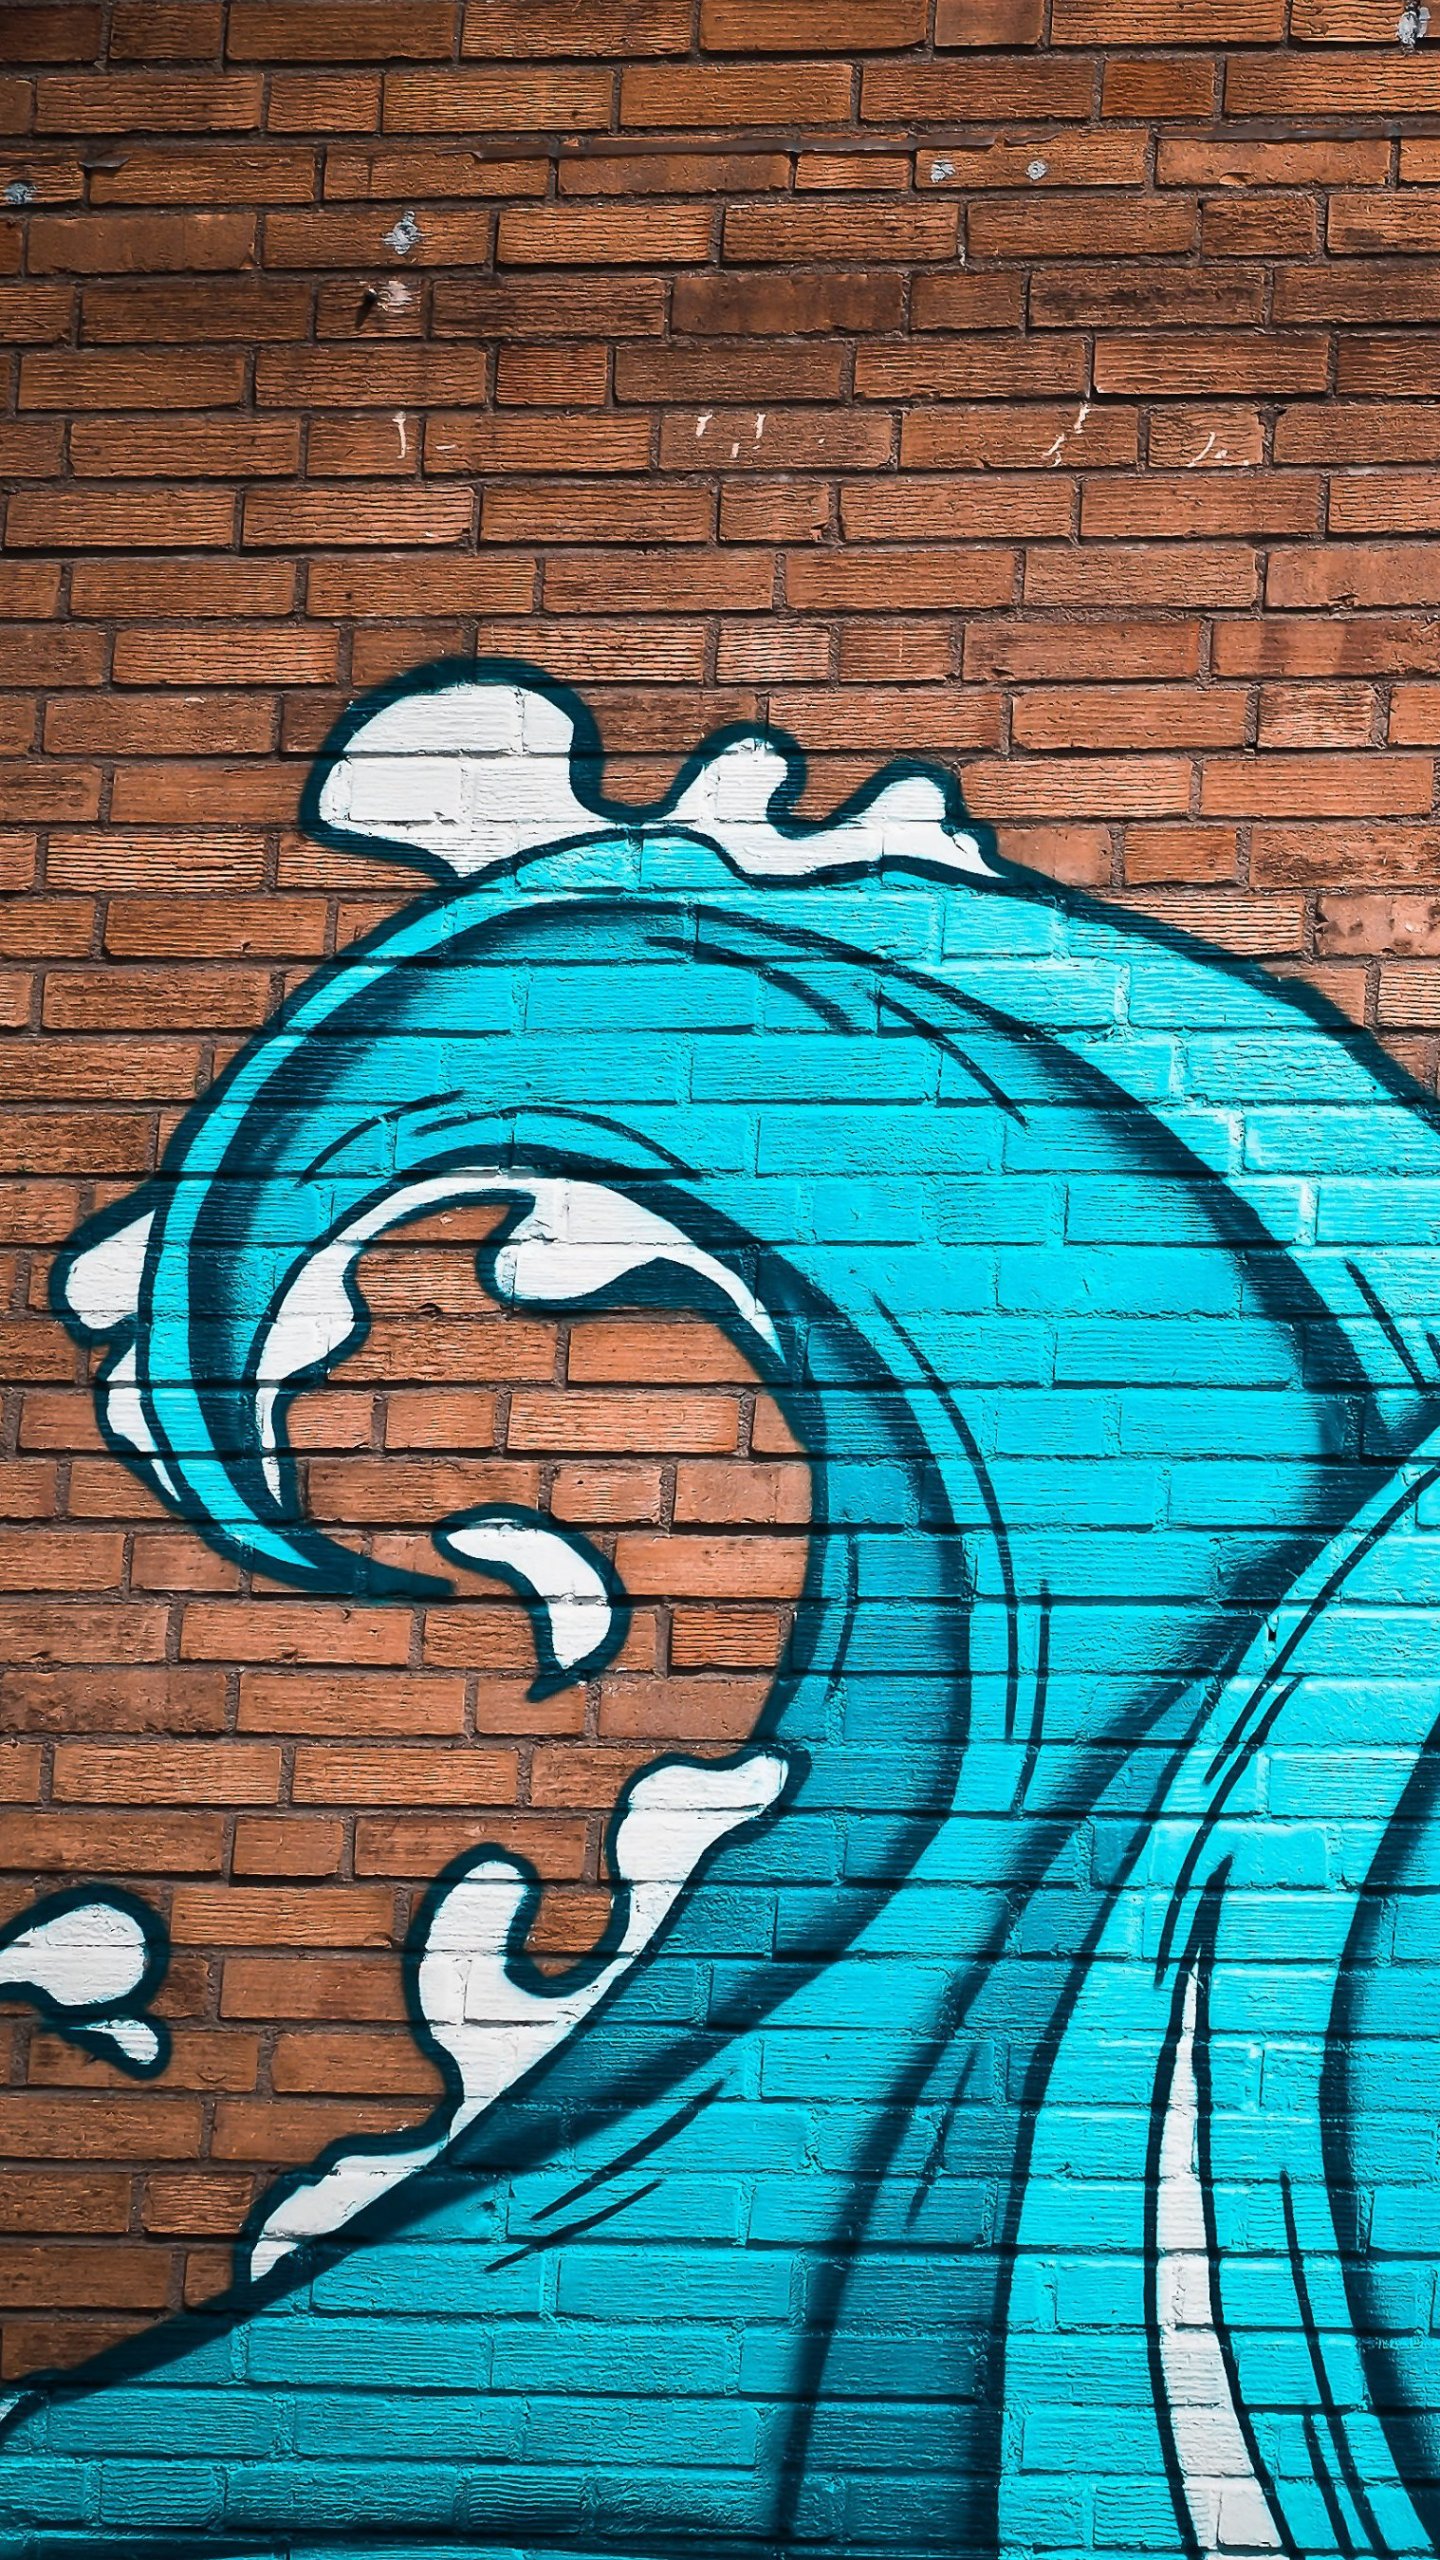 Ocean Waves Street Art Wallpaper - iPhone, Android & Desktop Backgrounds